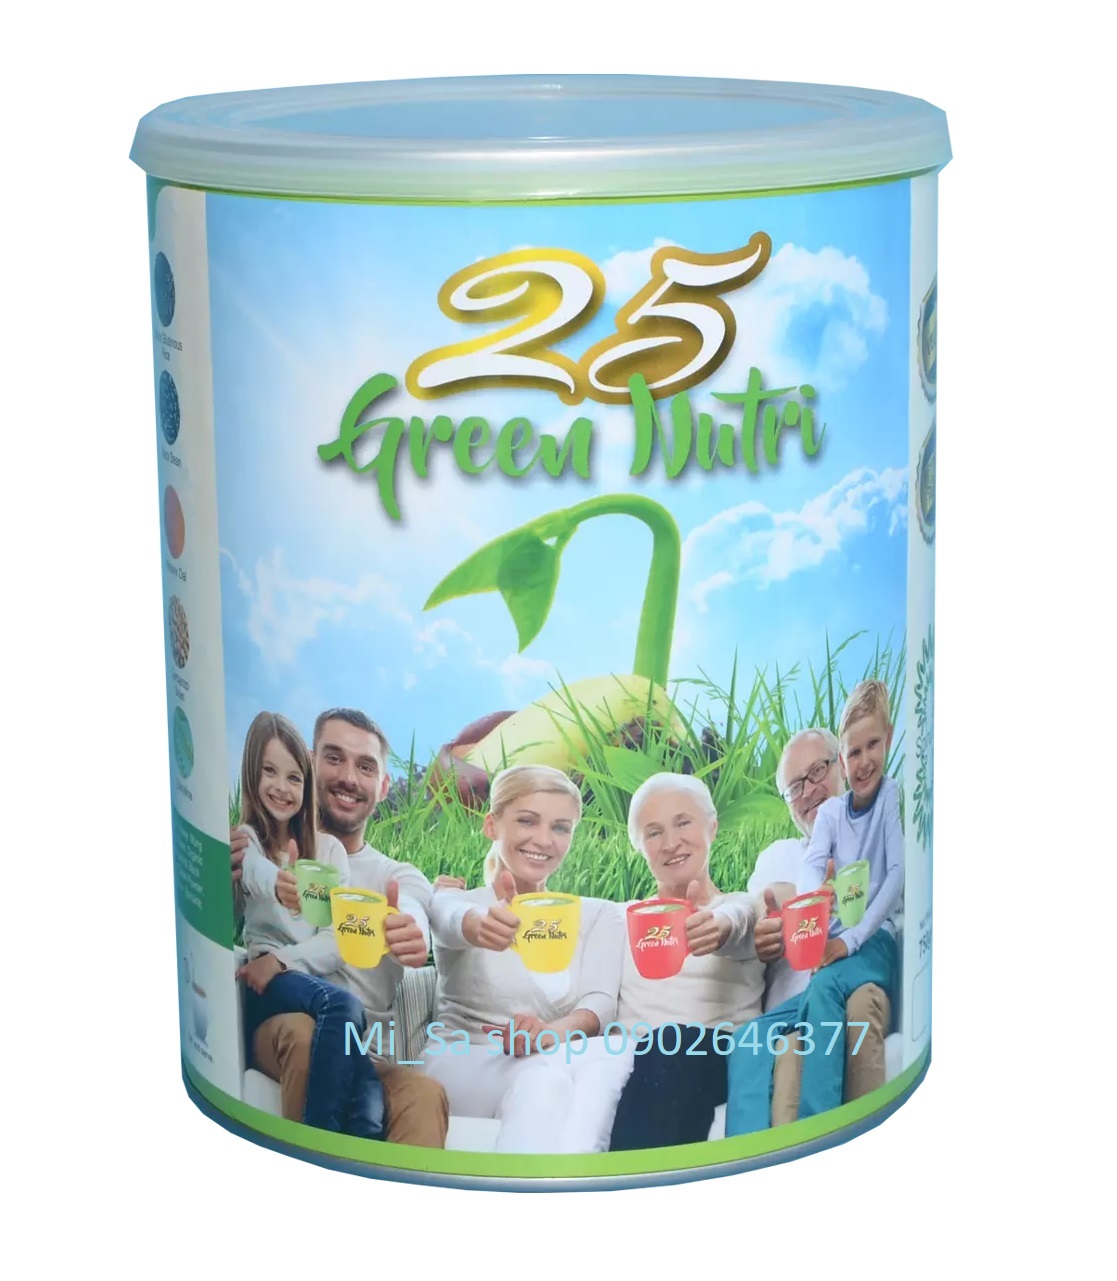 HCMTẶNG 1 HỘP DEAL HOT Mua 6 lon bột ngũ cốc dinh dưỡng 25 Green Nutri Lon